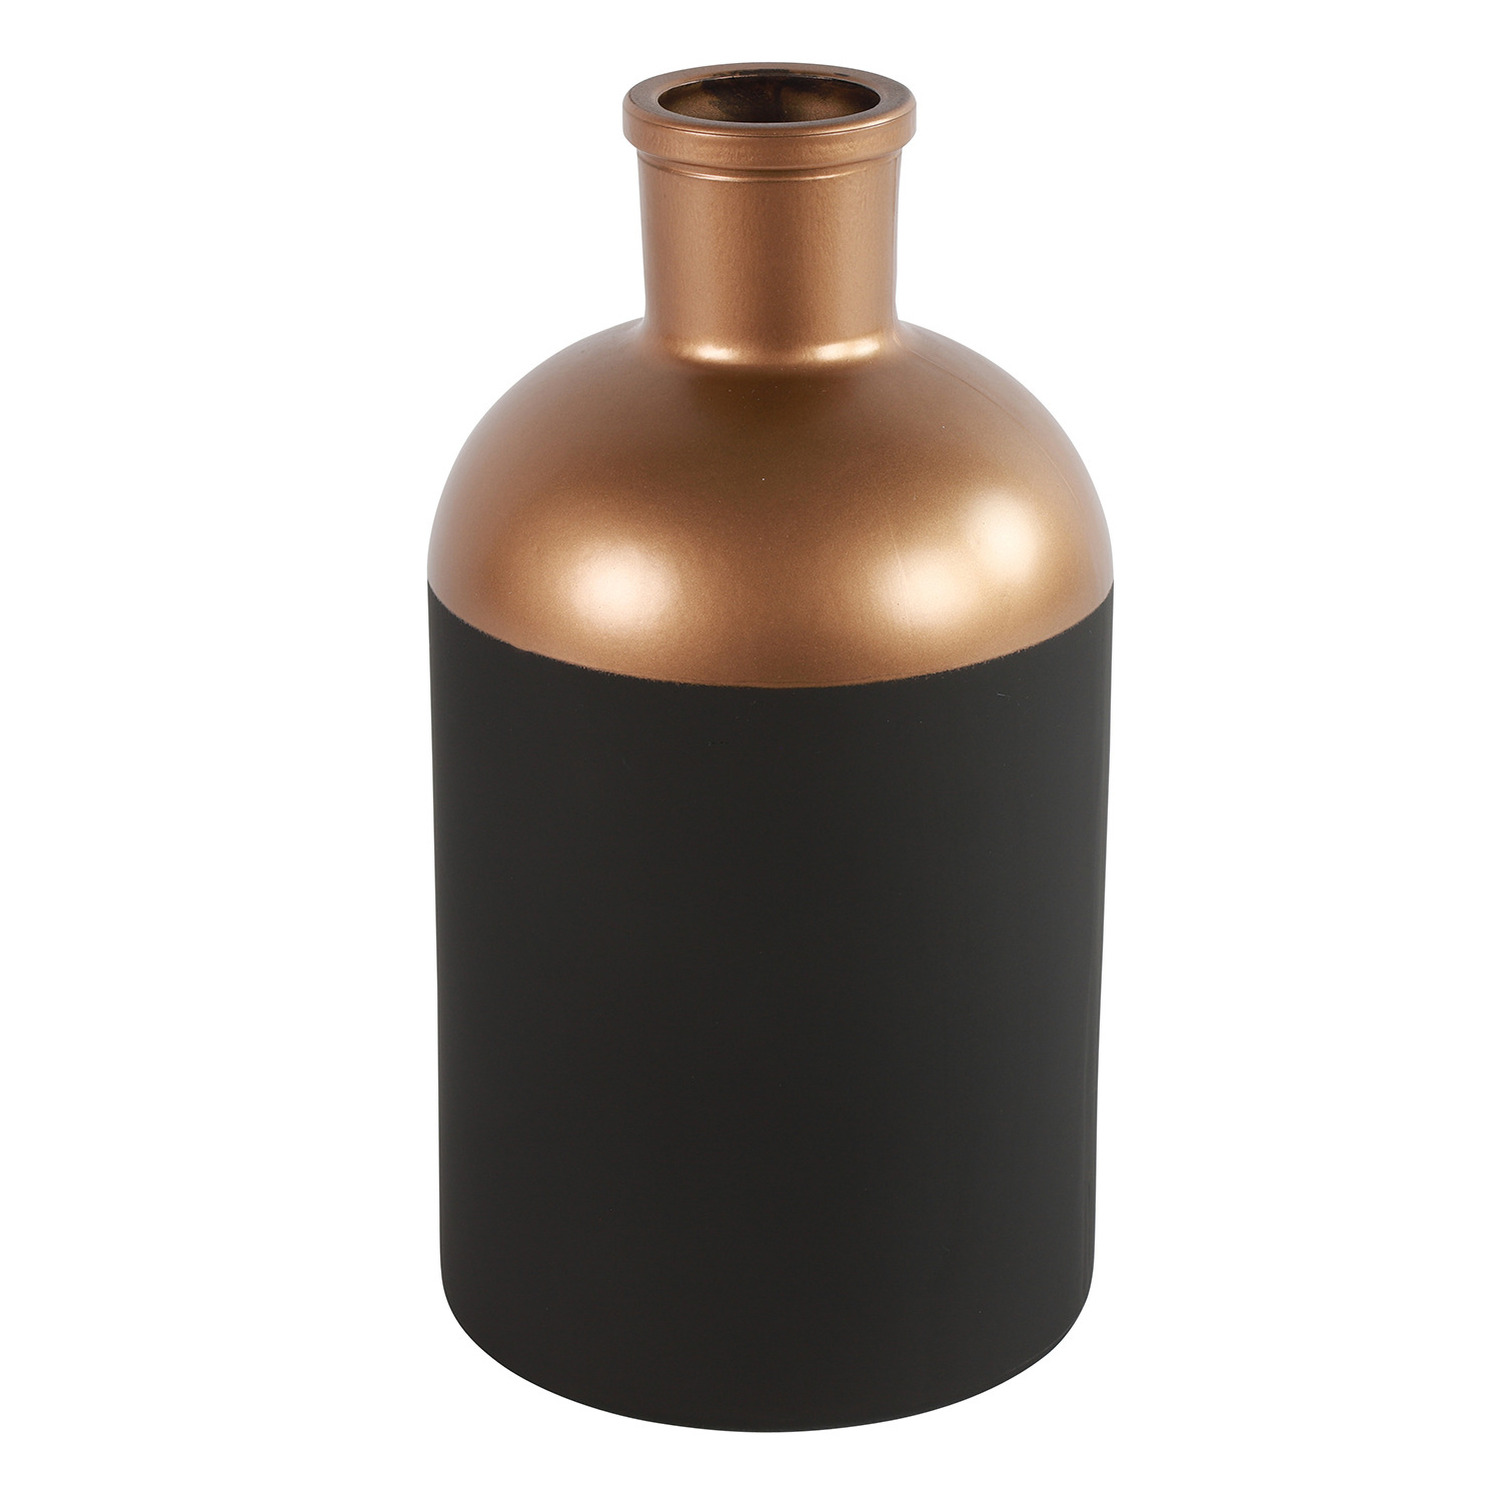 Countryfield Bloemen of deco vaas - zwart/koper - glas - luxe fles vorm - D14 x H26 cm -